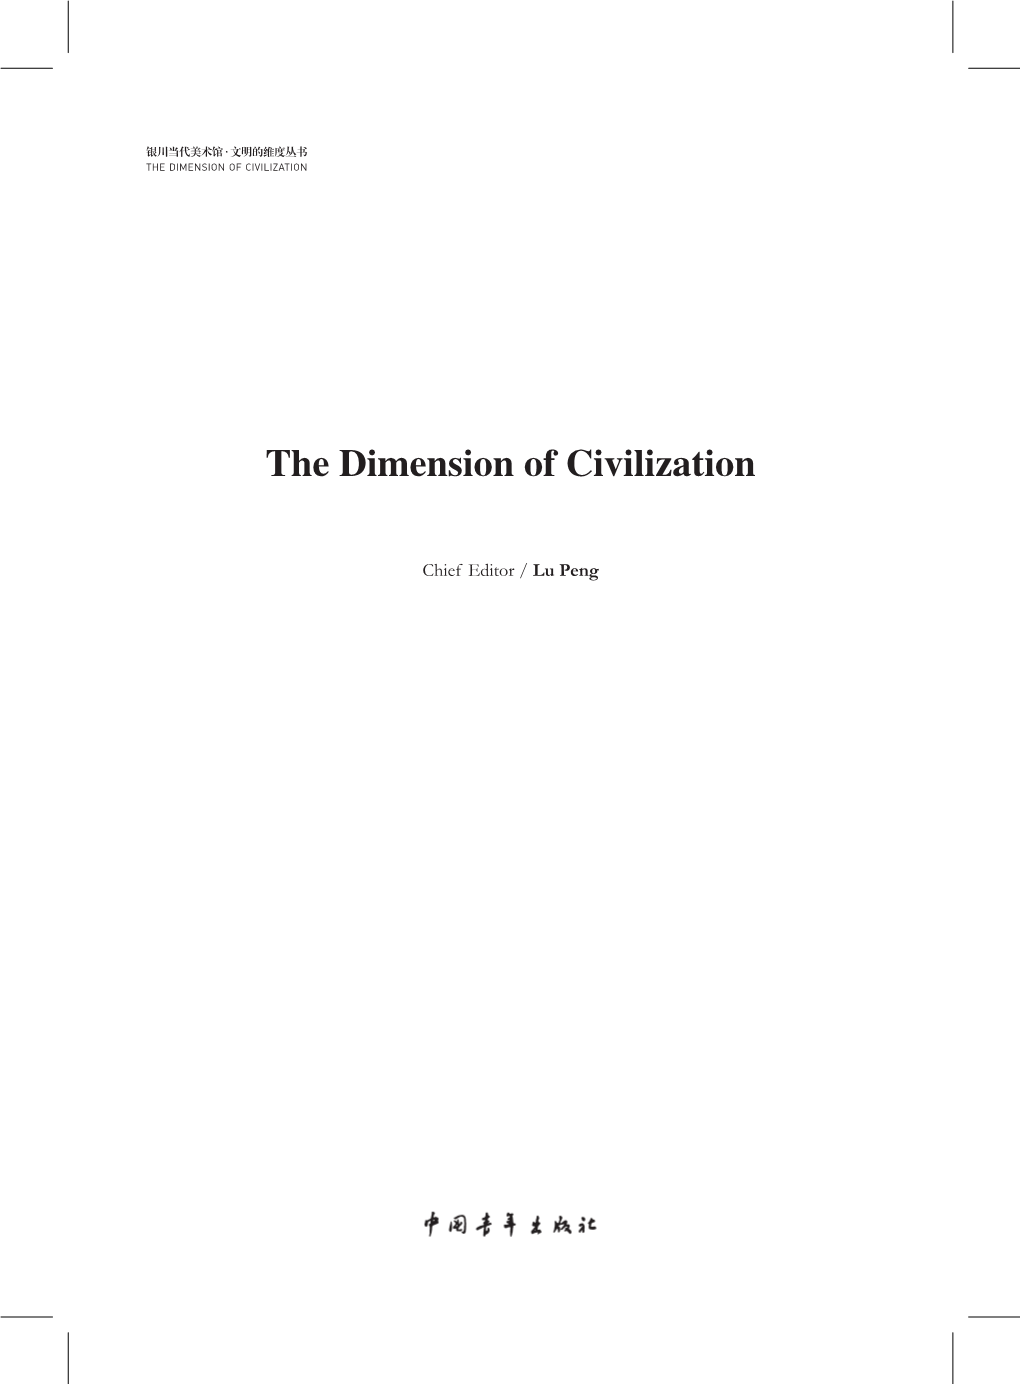 The Dimension of Civilization